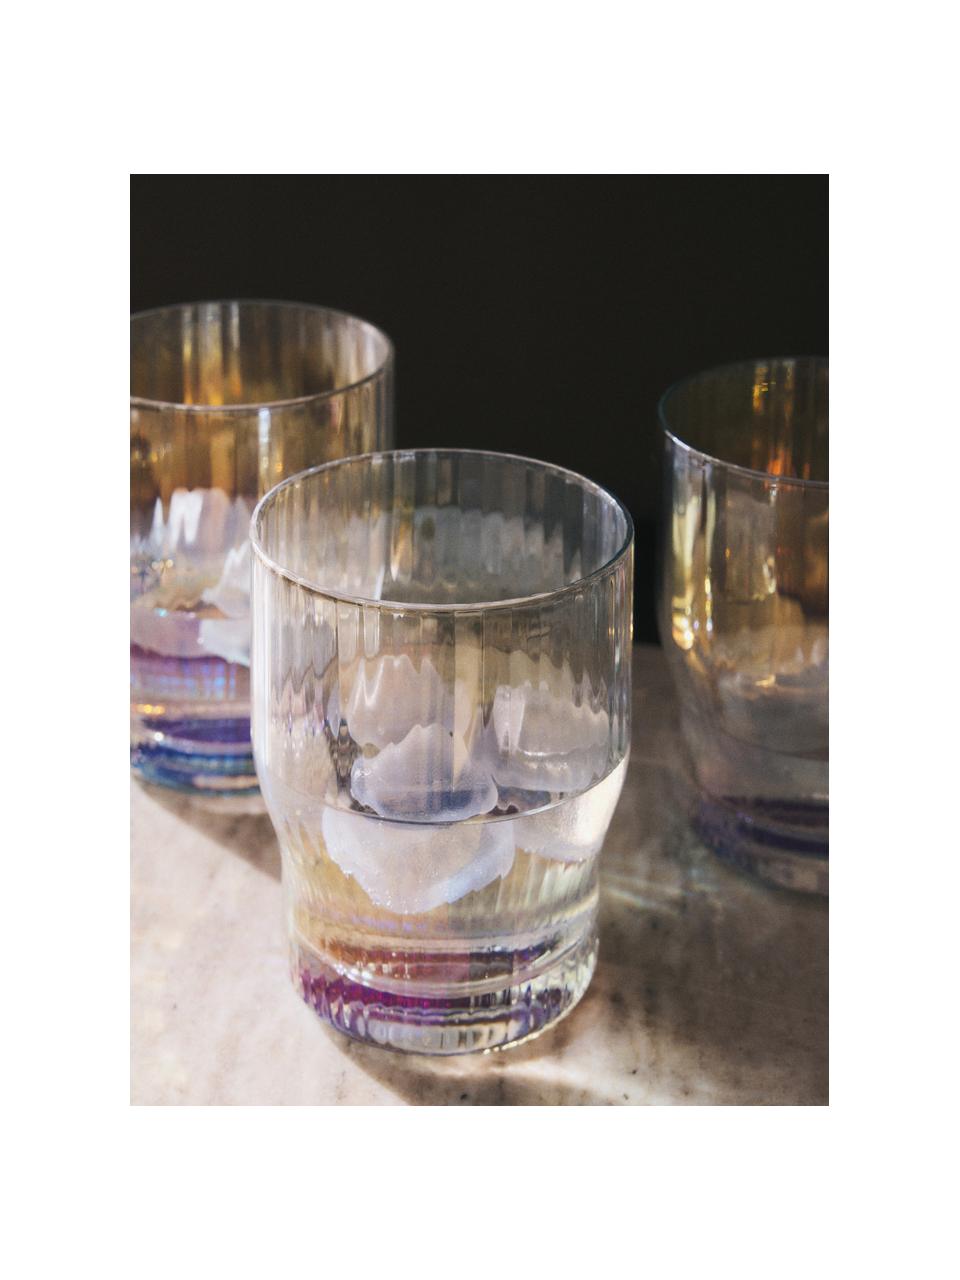 Ručně foukané sklenice s reliéfem drážek a perleťovým leskem Juno, 4 ks, Sklo, Transparentní, Ø 9 cm, V 11 cm